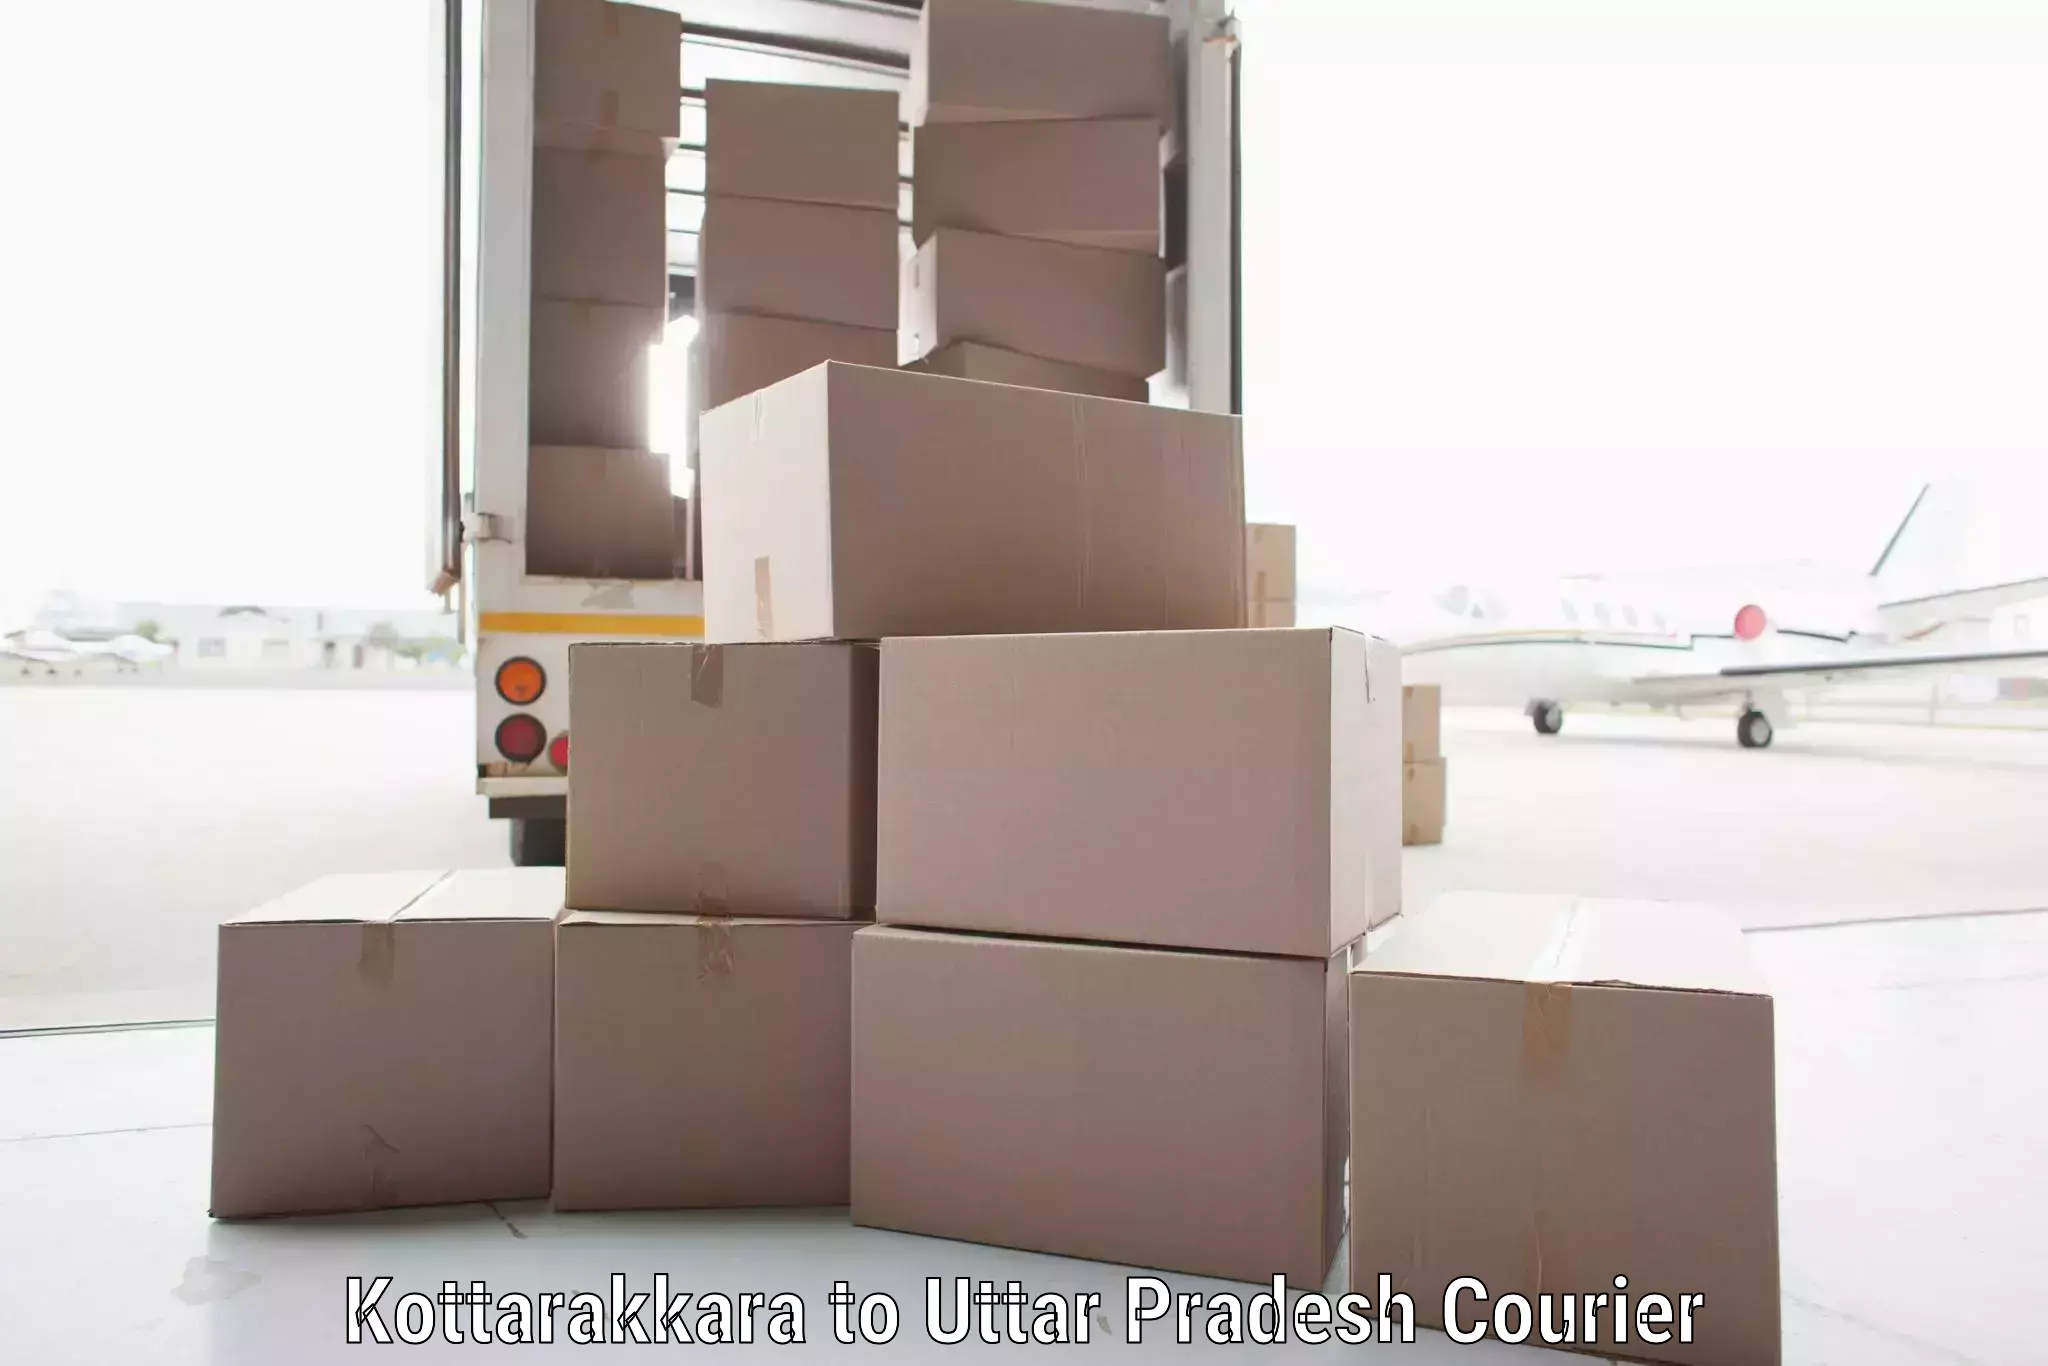 Customized shipping options Kottarakkara to Bansdih